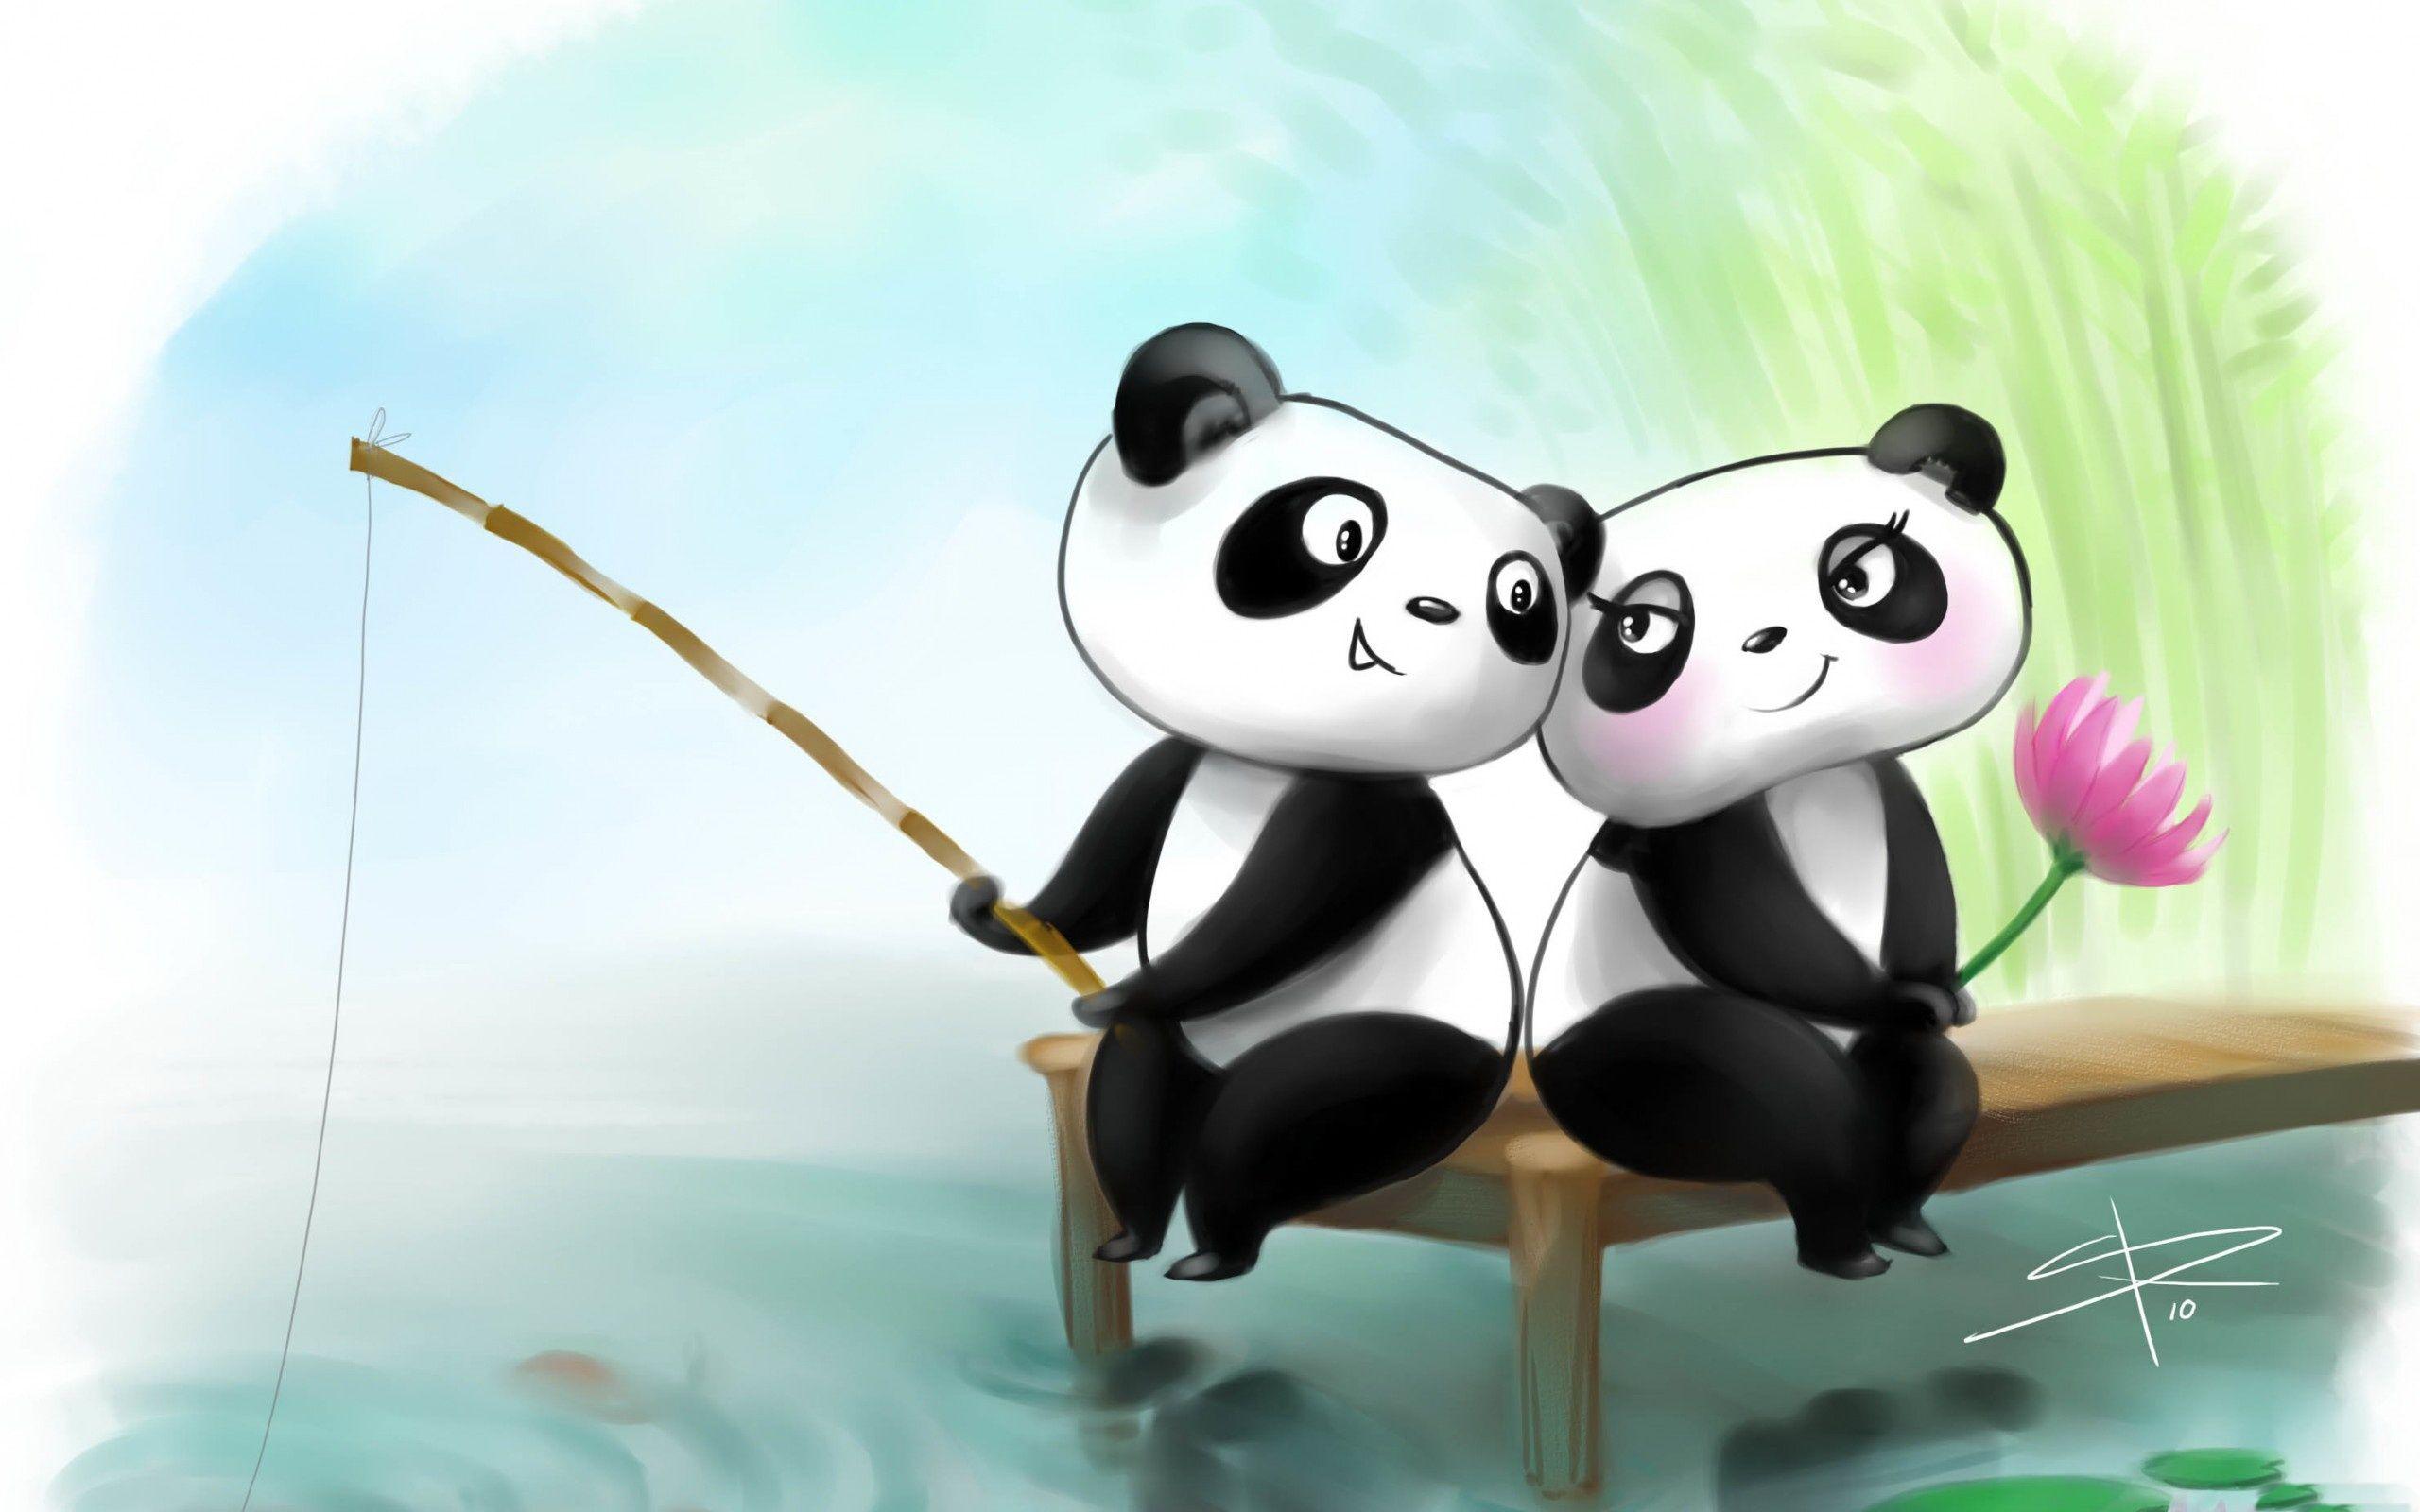 Panda Cartoon Images  Free Download on Freepik